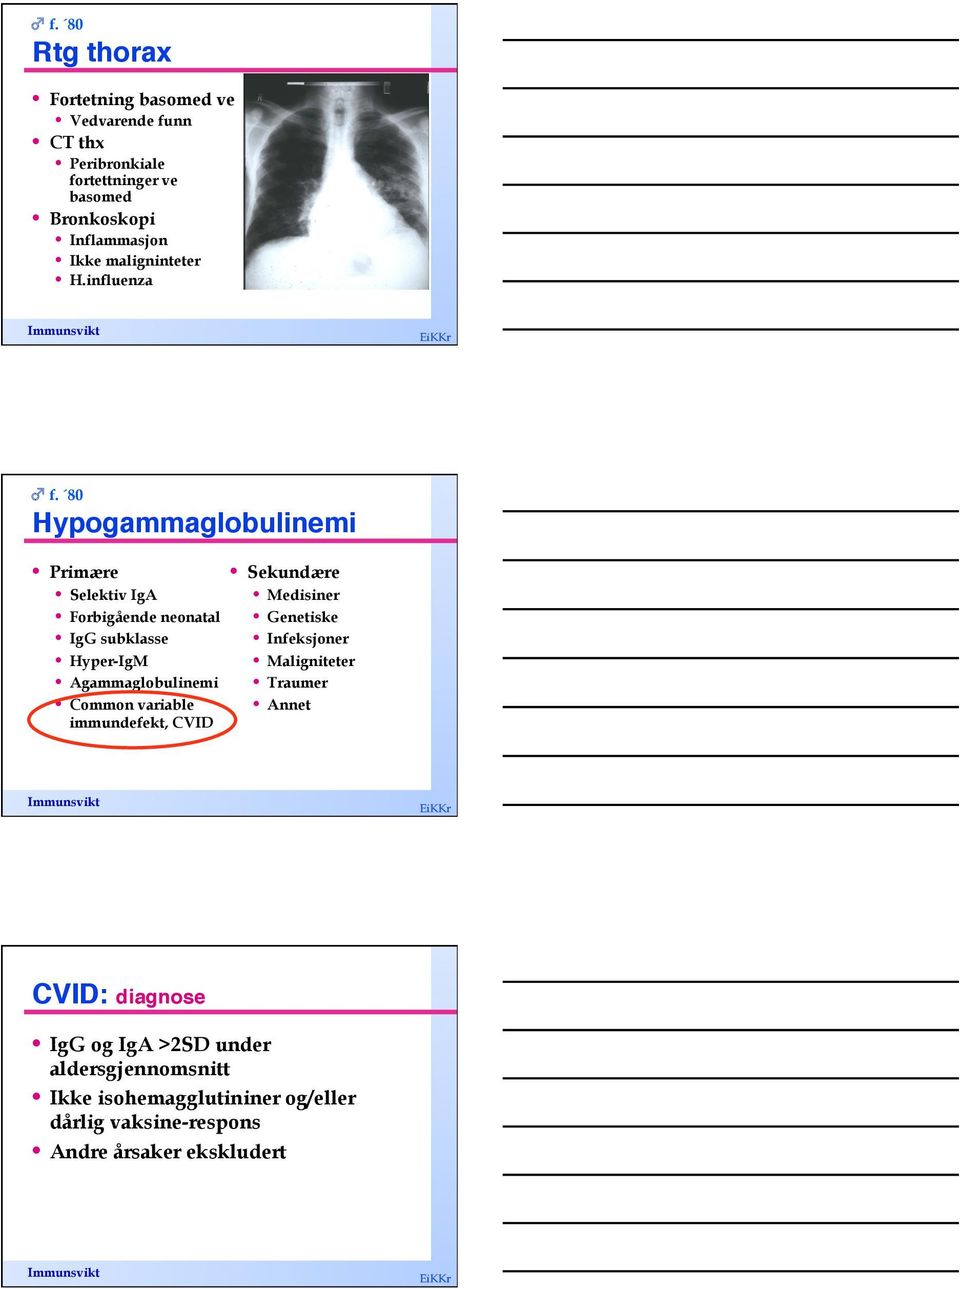 H.influenza f. 80 Hypogammaglobulinemi!